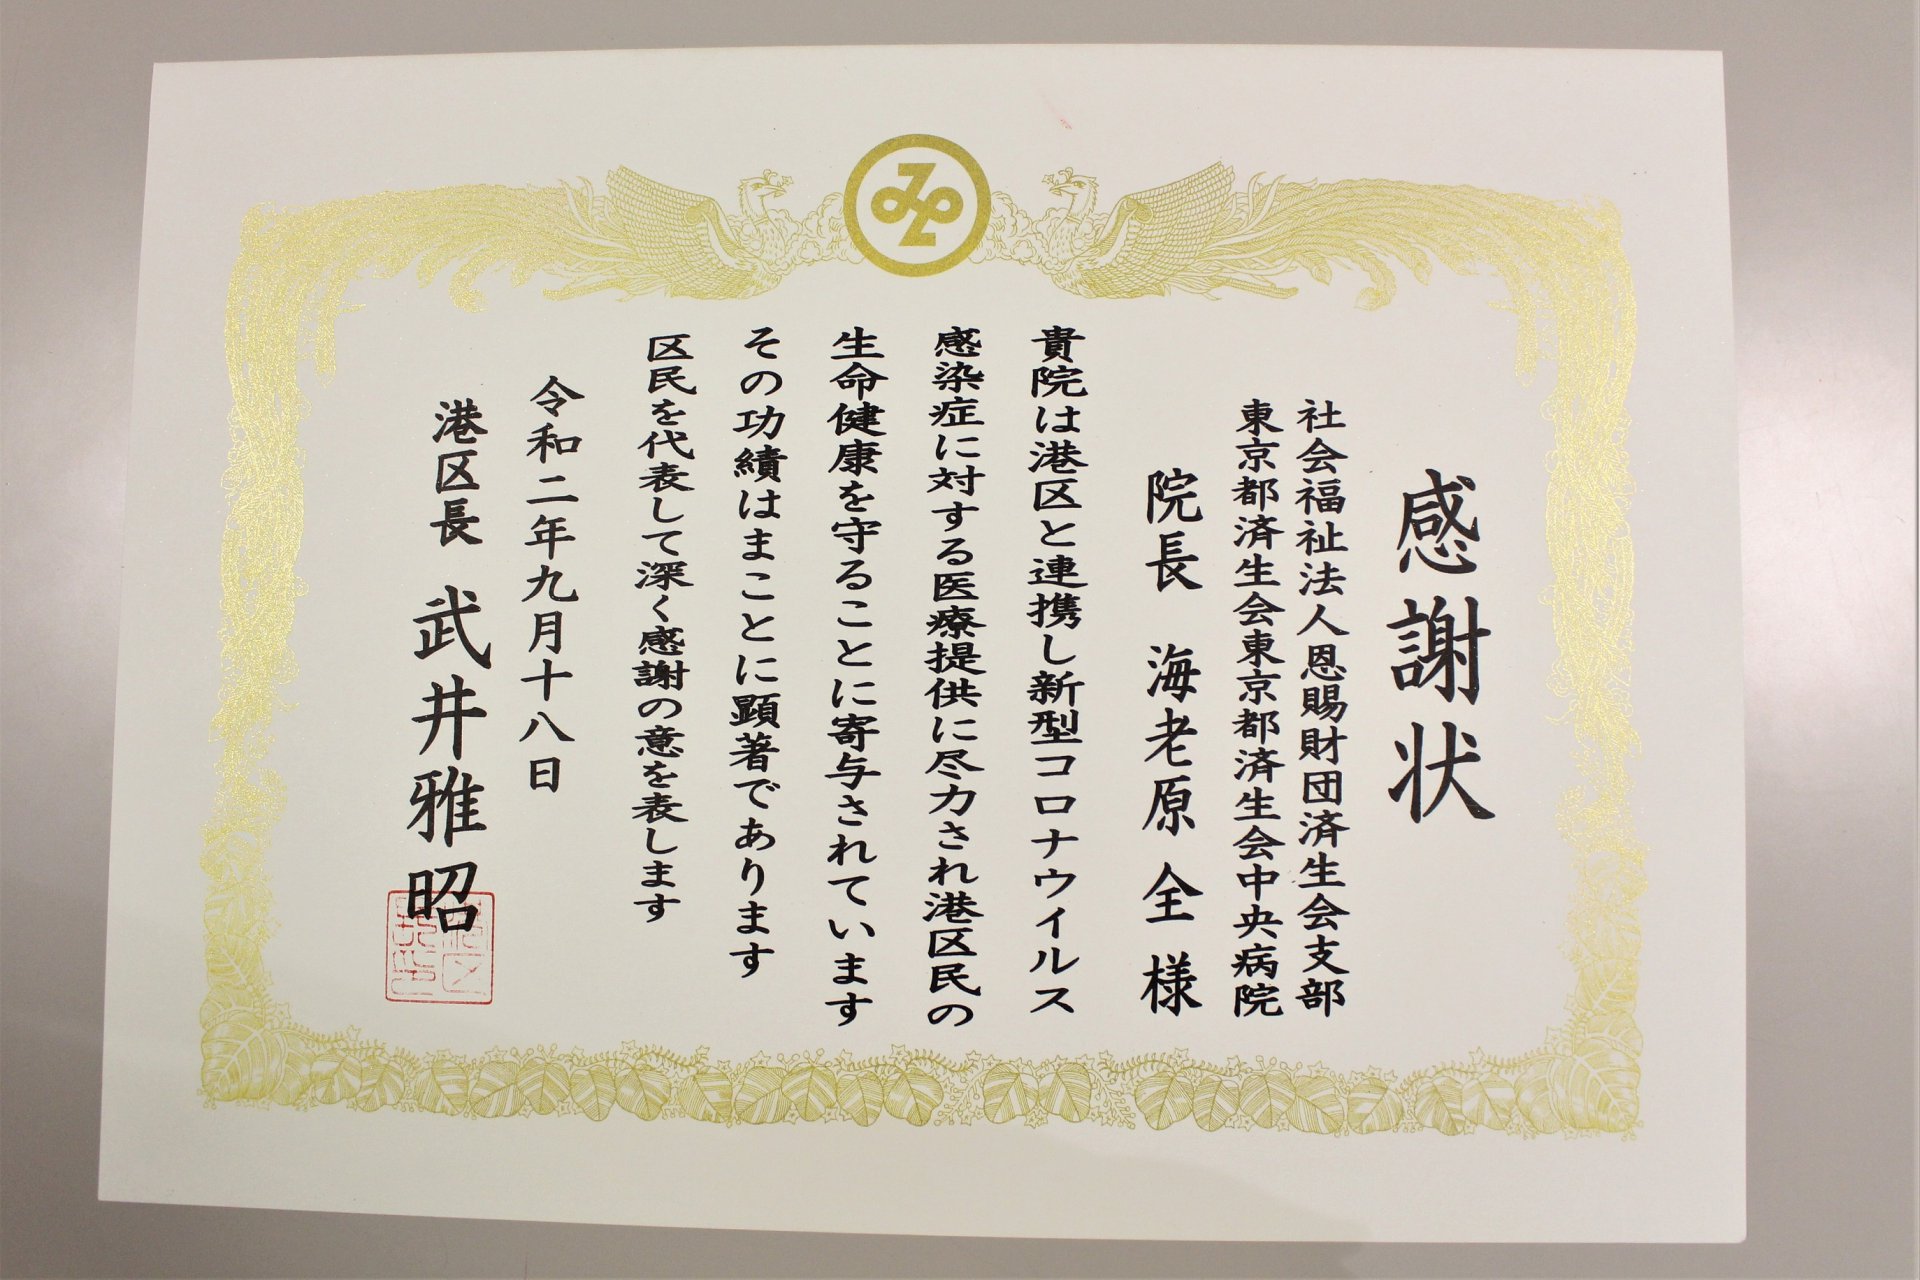 港区長より感謝状が贈られました 東京都済生会中央病院